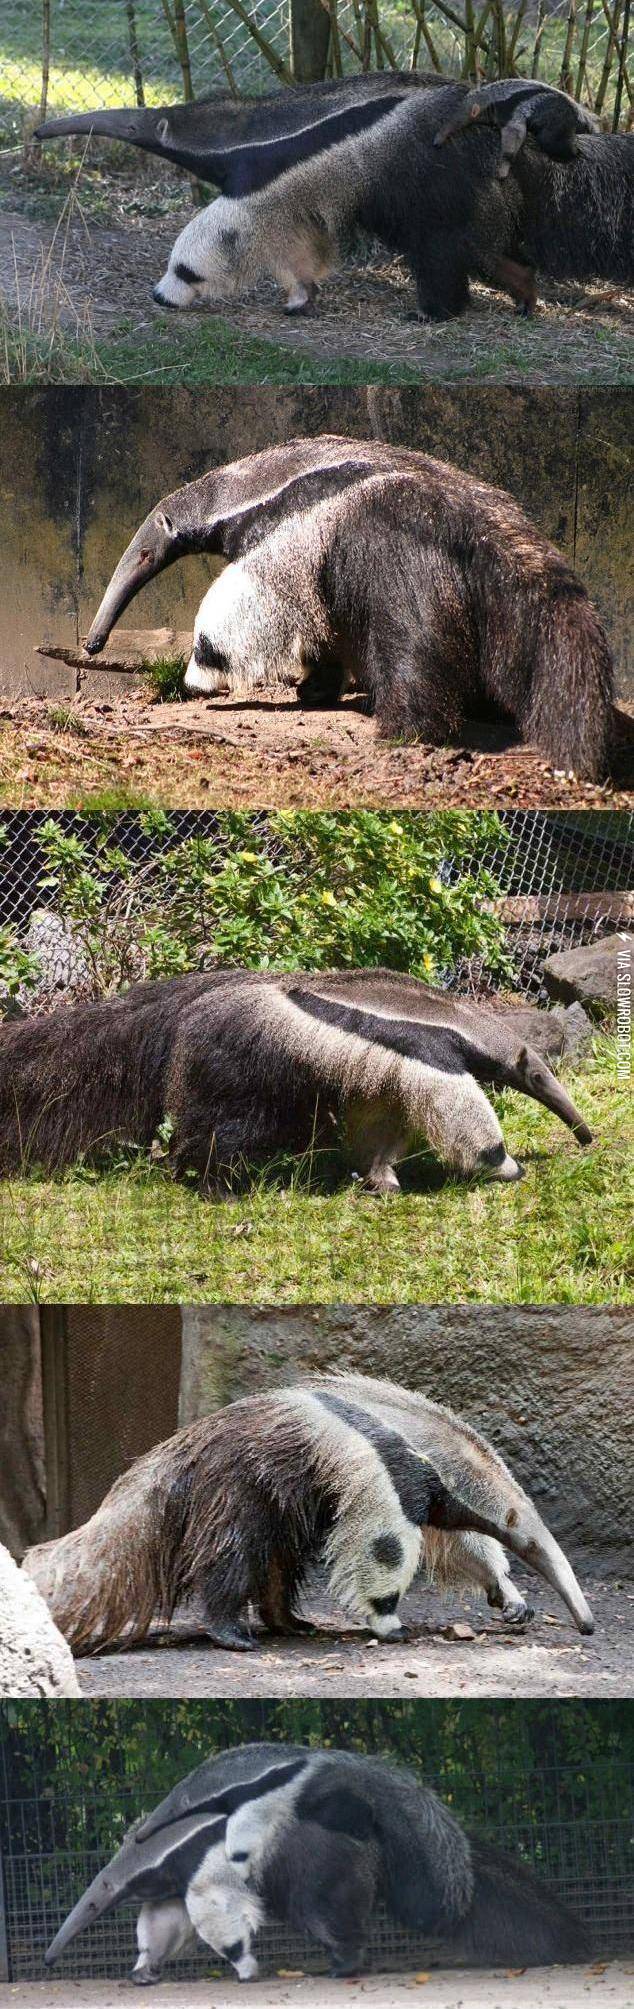 Anteaters+legs+look+like+Pandas